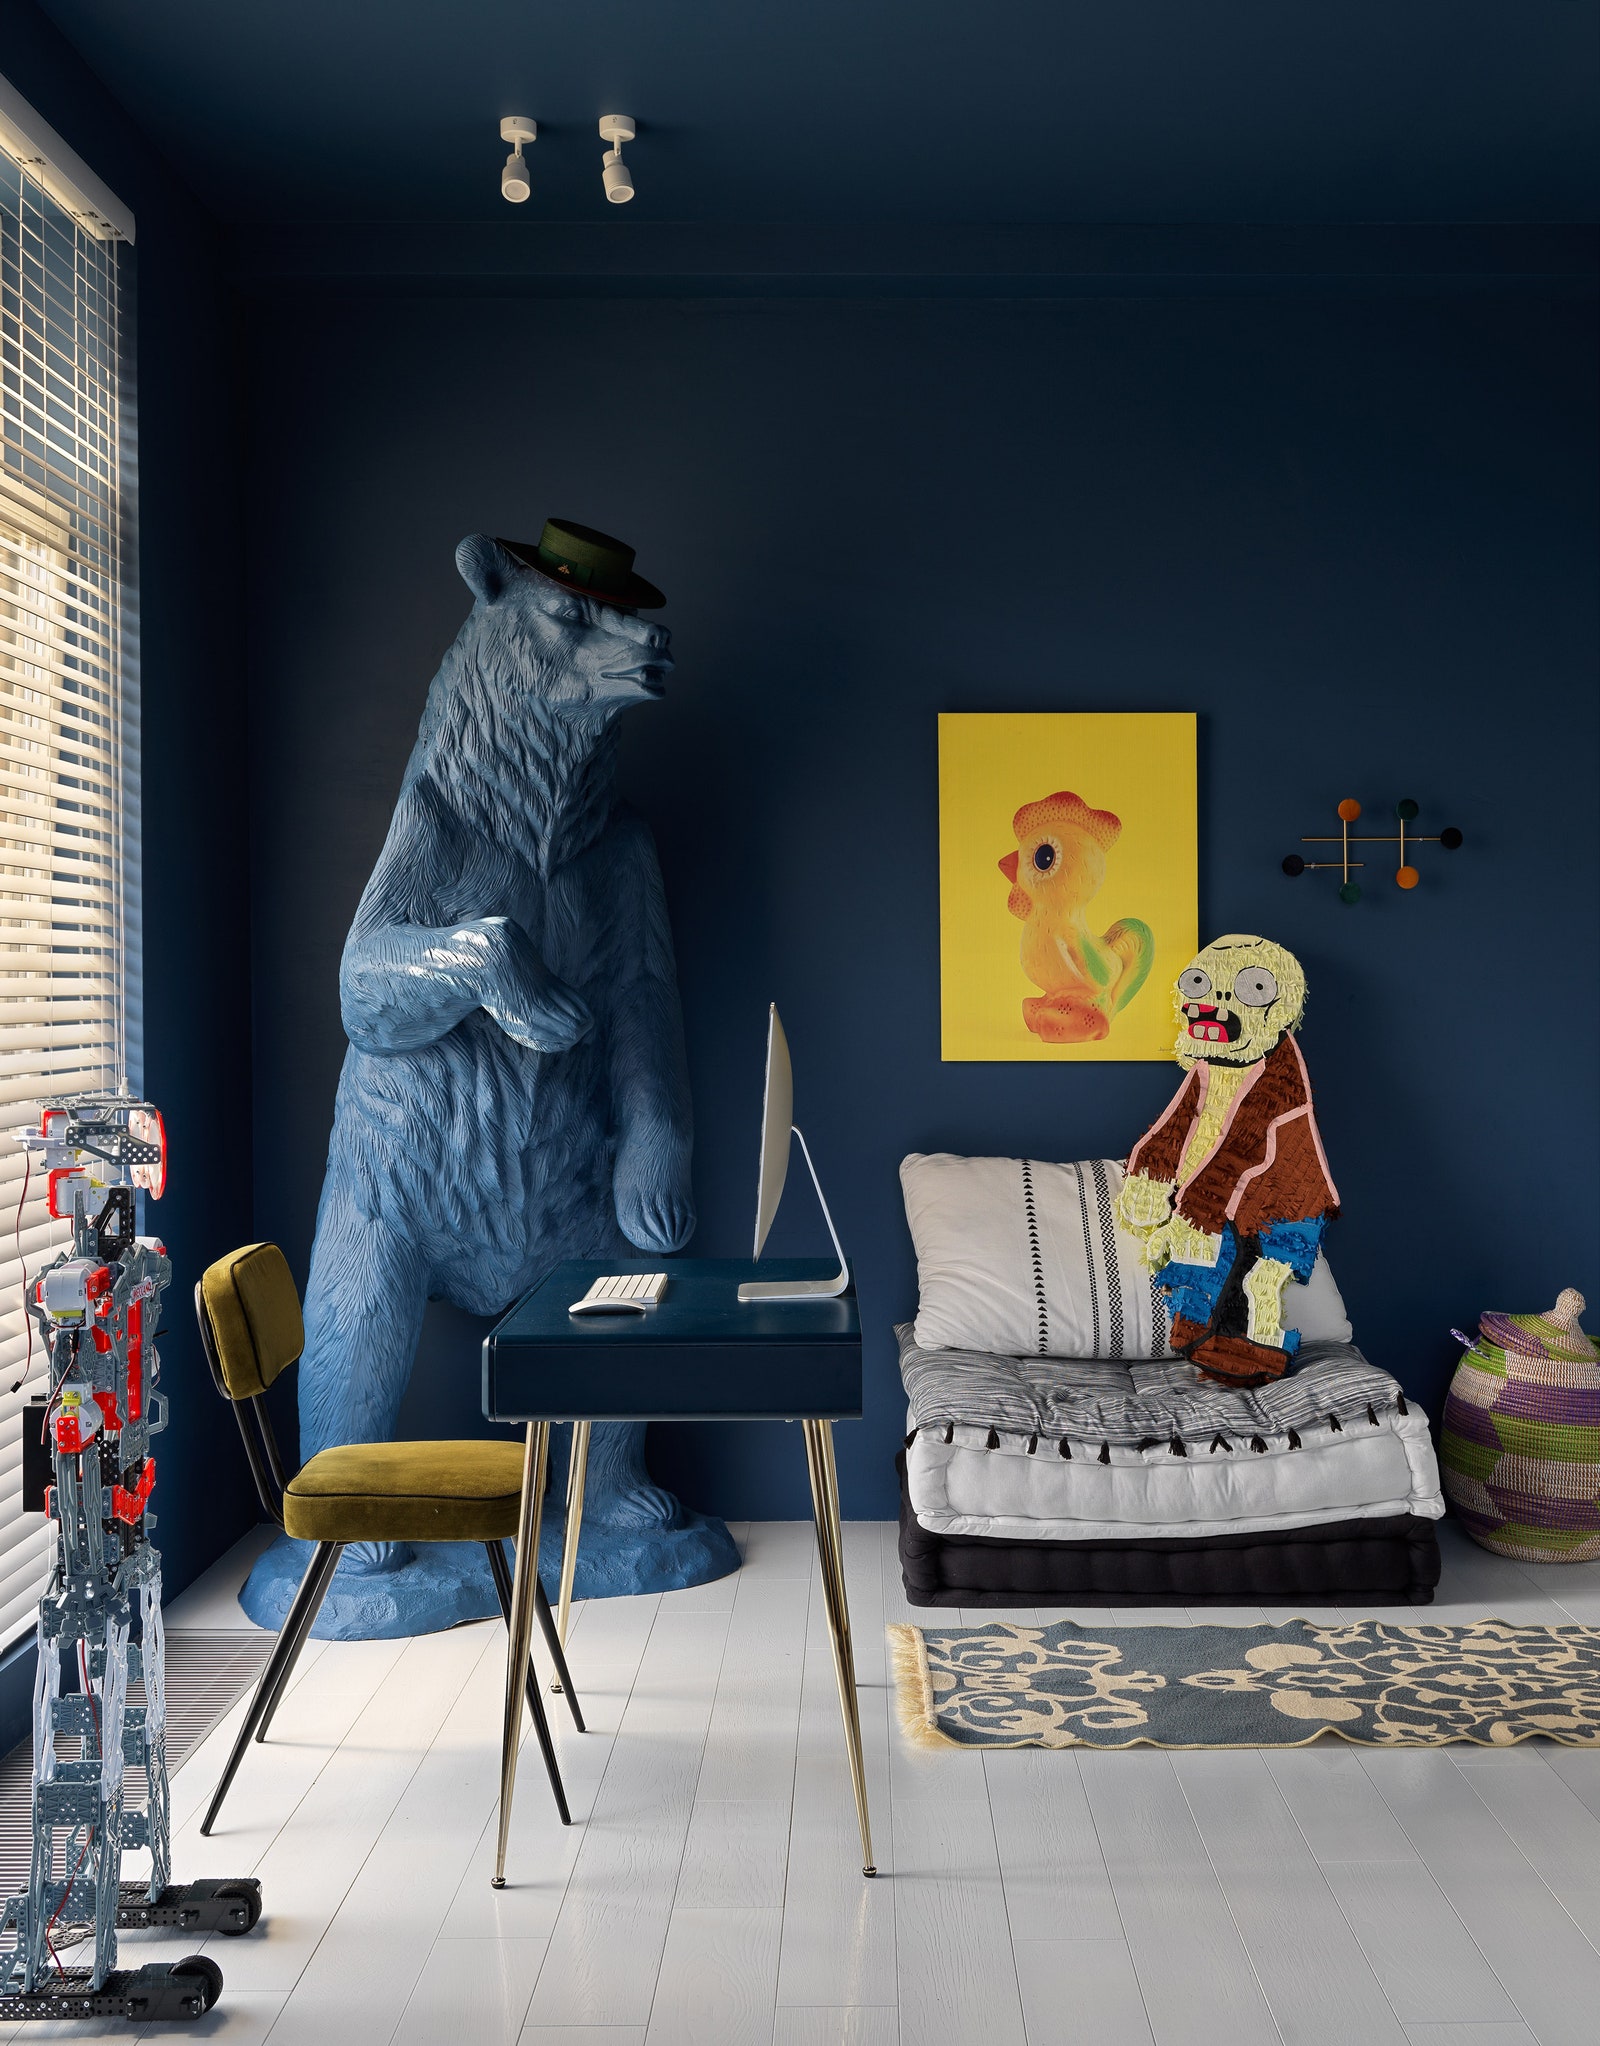 Игровая комната мальчика в отличие от других пространств в доме выкрашена в синий цвет.